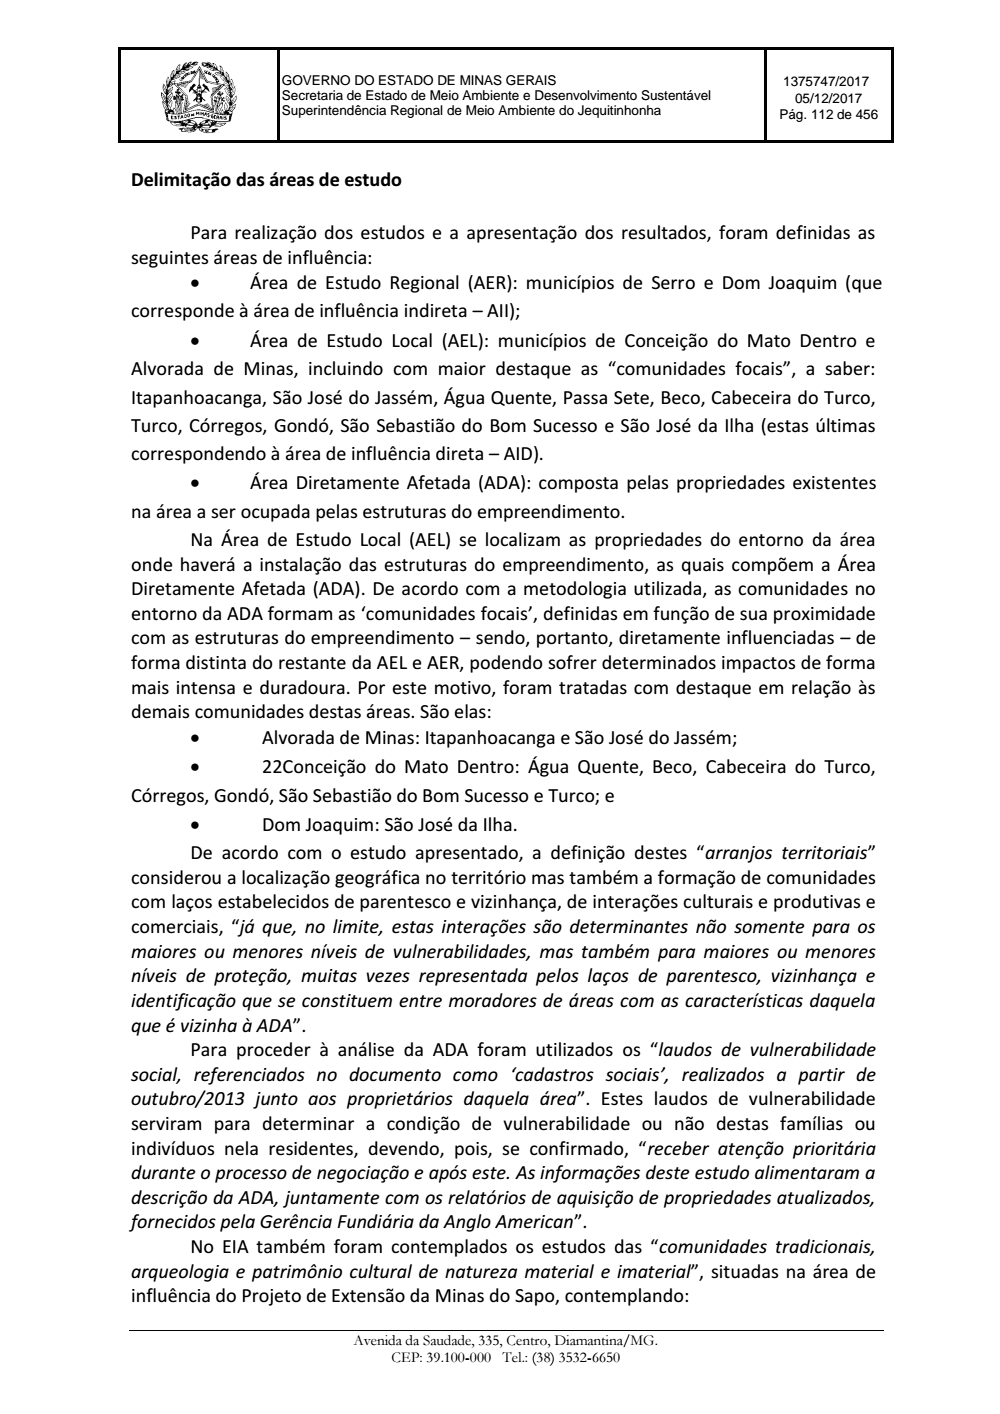 Page 112 from Parecer único da Secretaria de estado de Meio Ambiente e Desenvolvimento Sustentável (SEMAD)